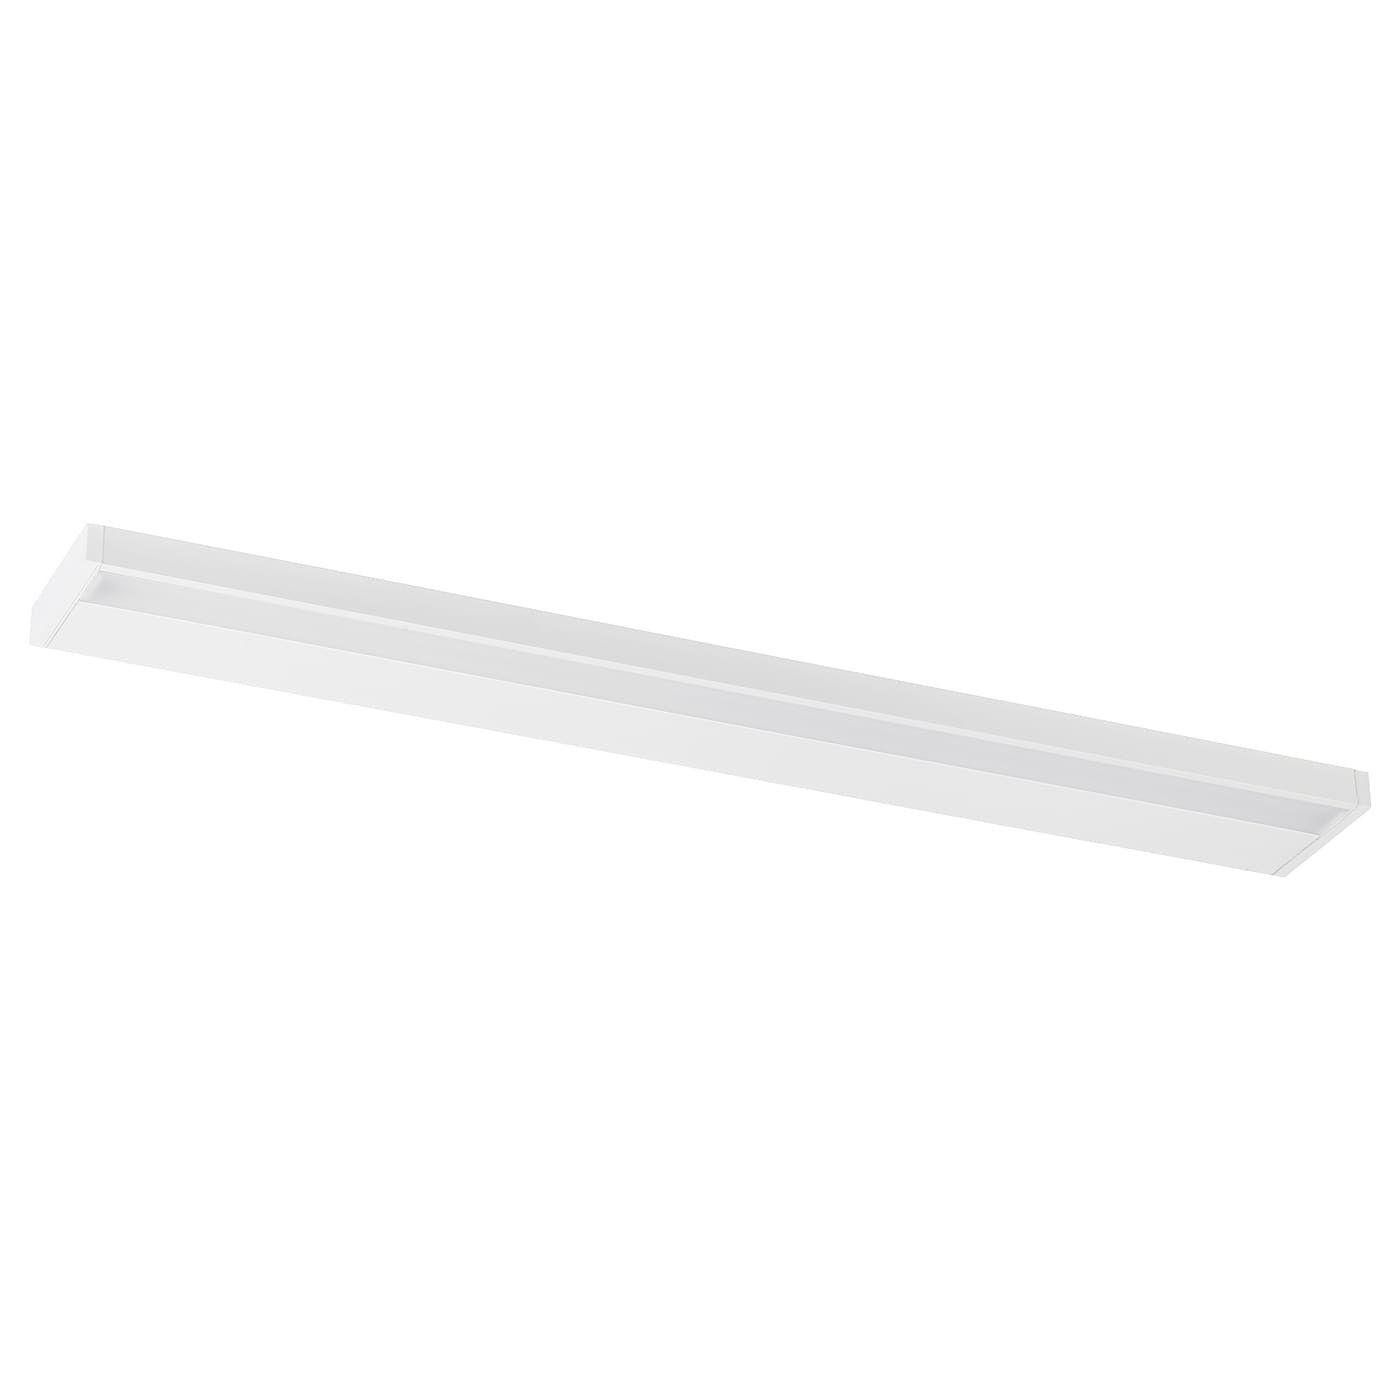 IKEA GODMORGON ГОДМОРГОН Светодиодная LED подсветка шкафа / стены, белый, 100 см 90537394 905.373.94